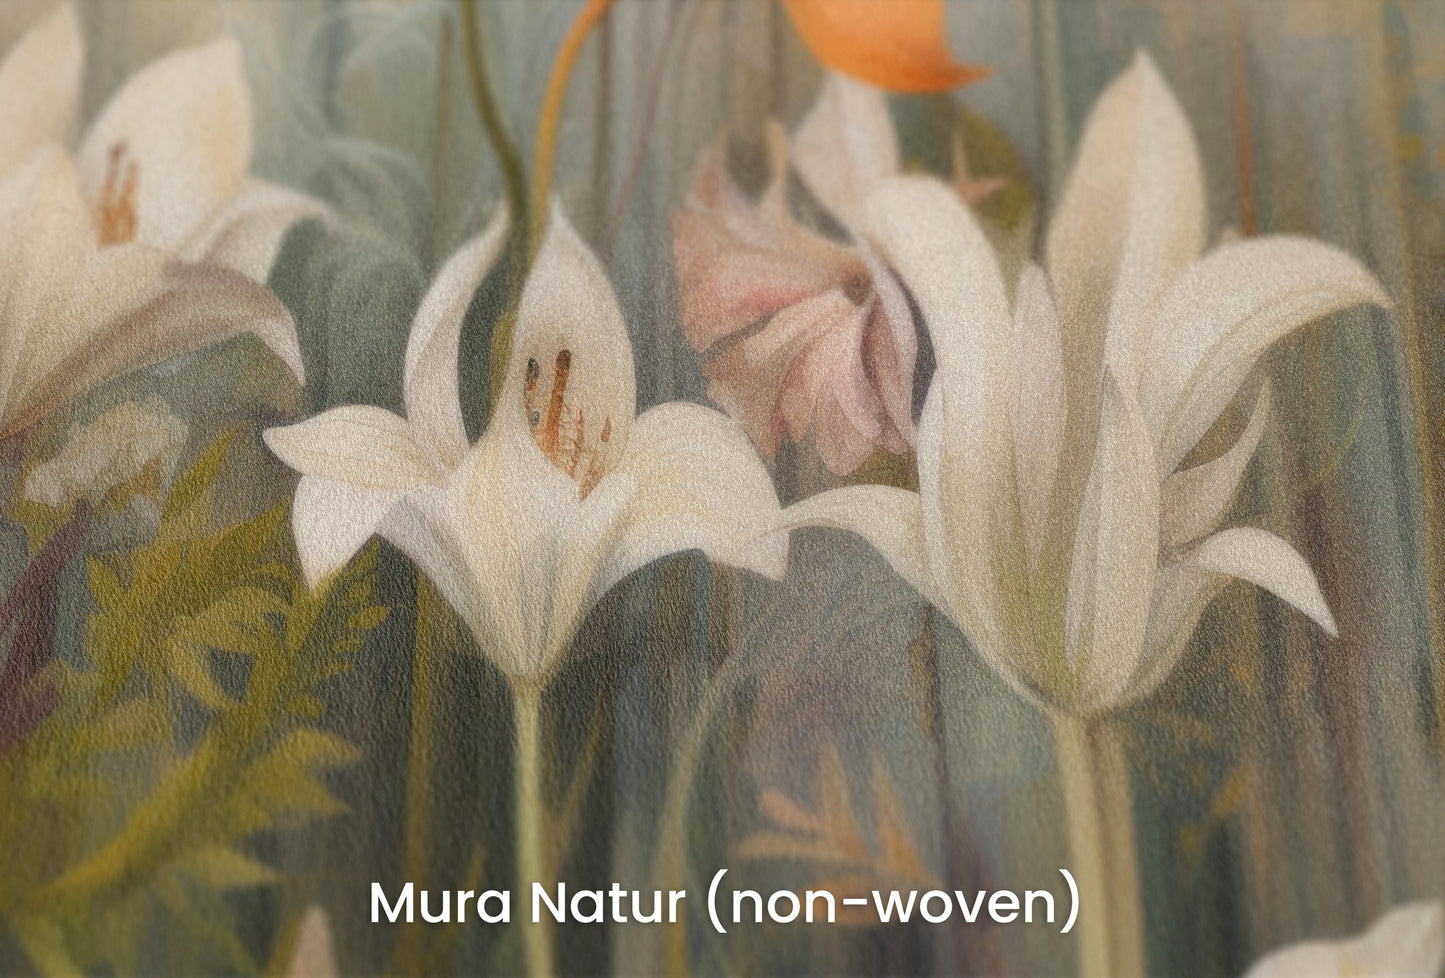 Zbliżenie na artystyczną fototapetę o nazwie Whispering Garden na podłożu Mura Natur (non-woven) - naturalne i ekologiczne podłoże.